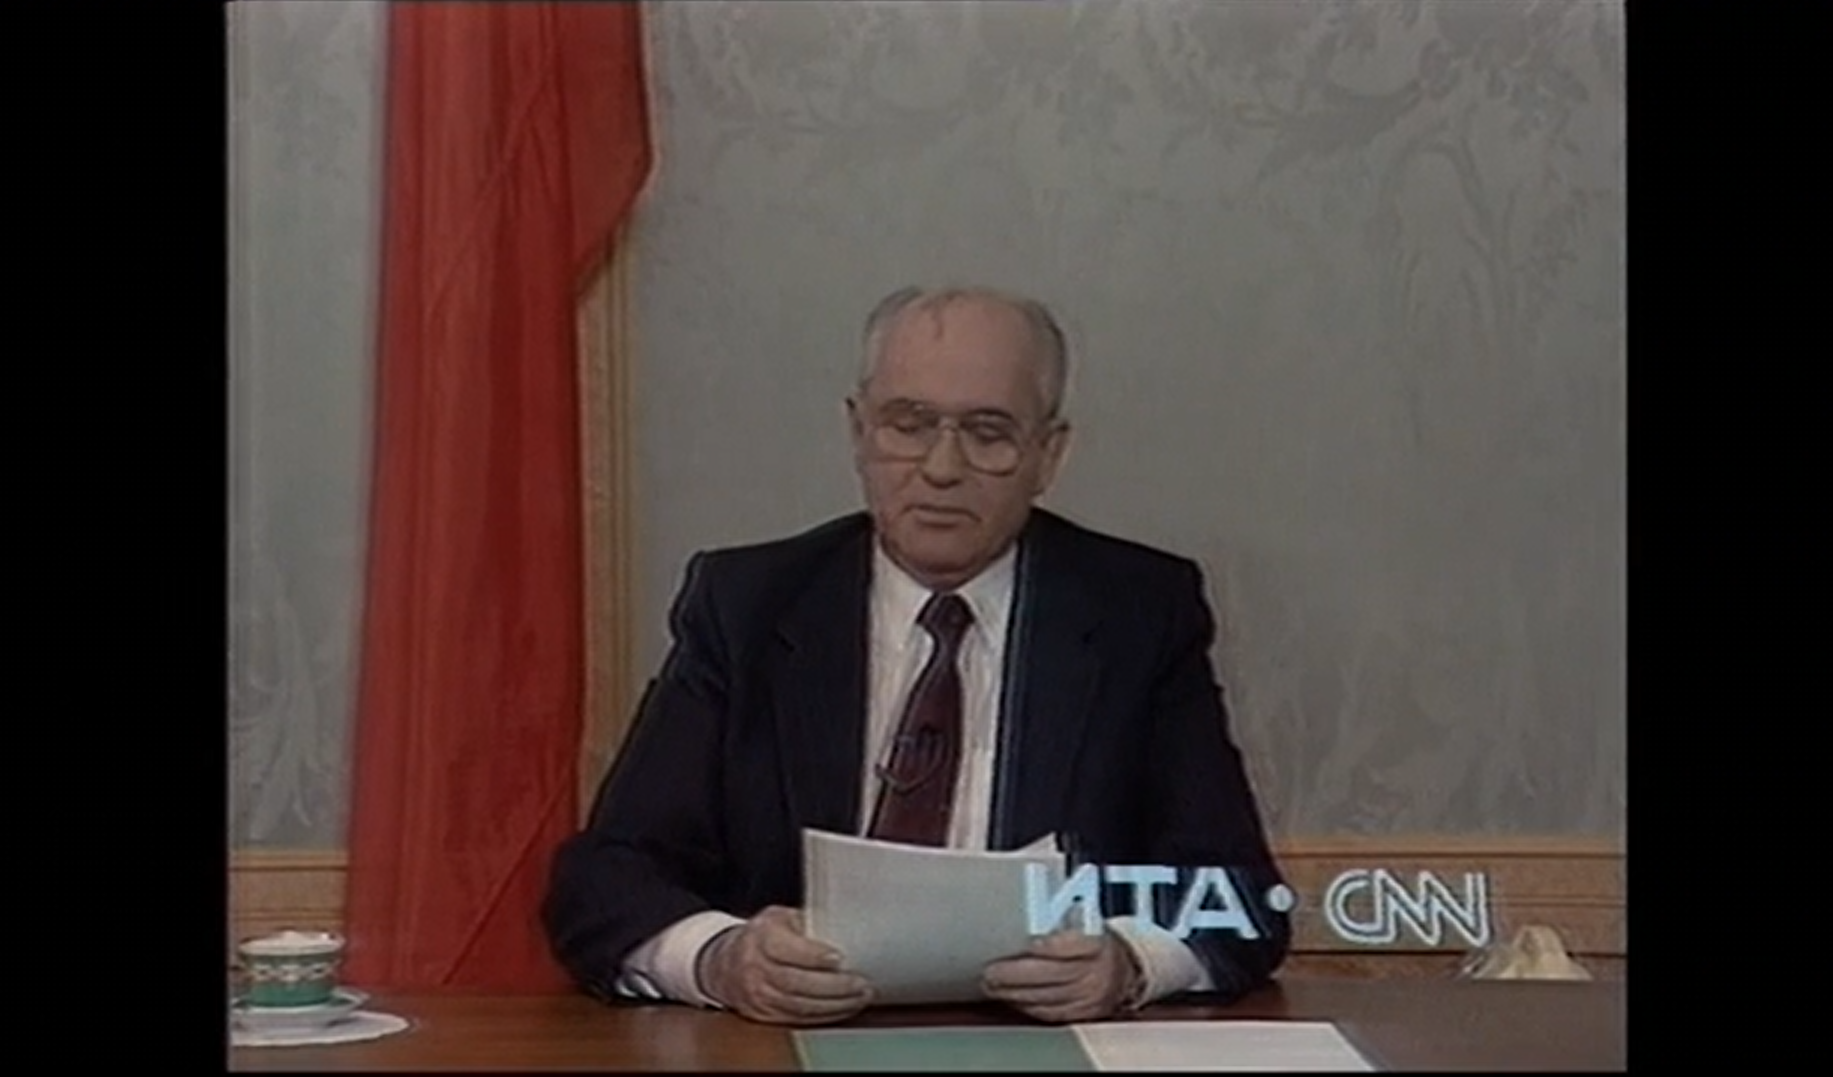 Out of breath Choice From there Acum 30 de ani URSS înceta să mai existe. Mihail Gorbaciov demisiona din  funcţia de preşedinte şi punea capăt Războiului Rece. Cronologia  evenimentelor ce au dus la dispariţia Uniunii Sovietice